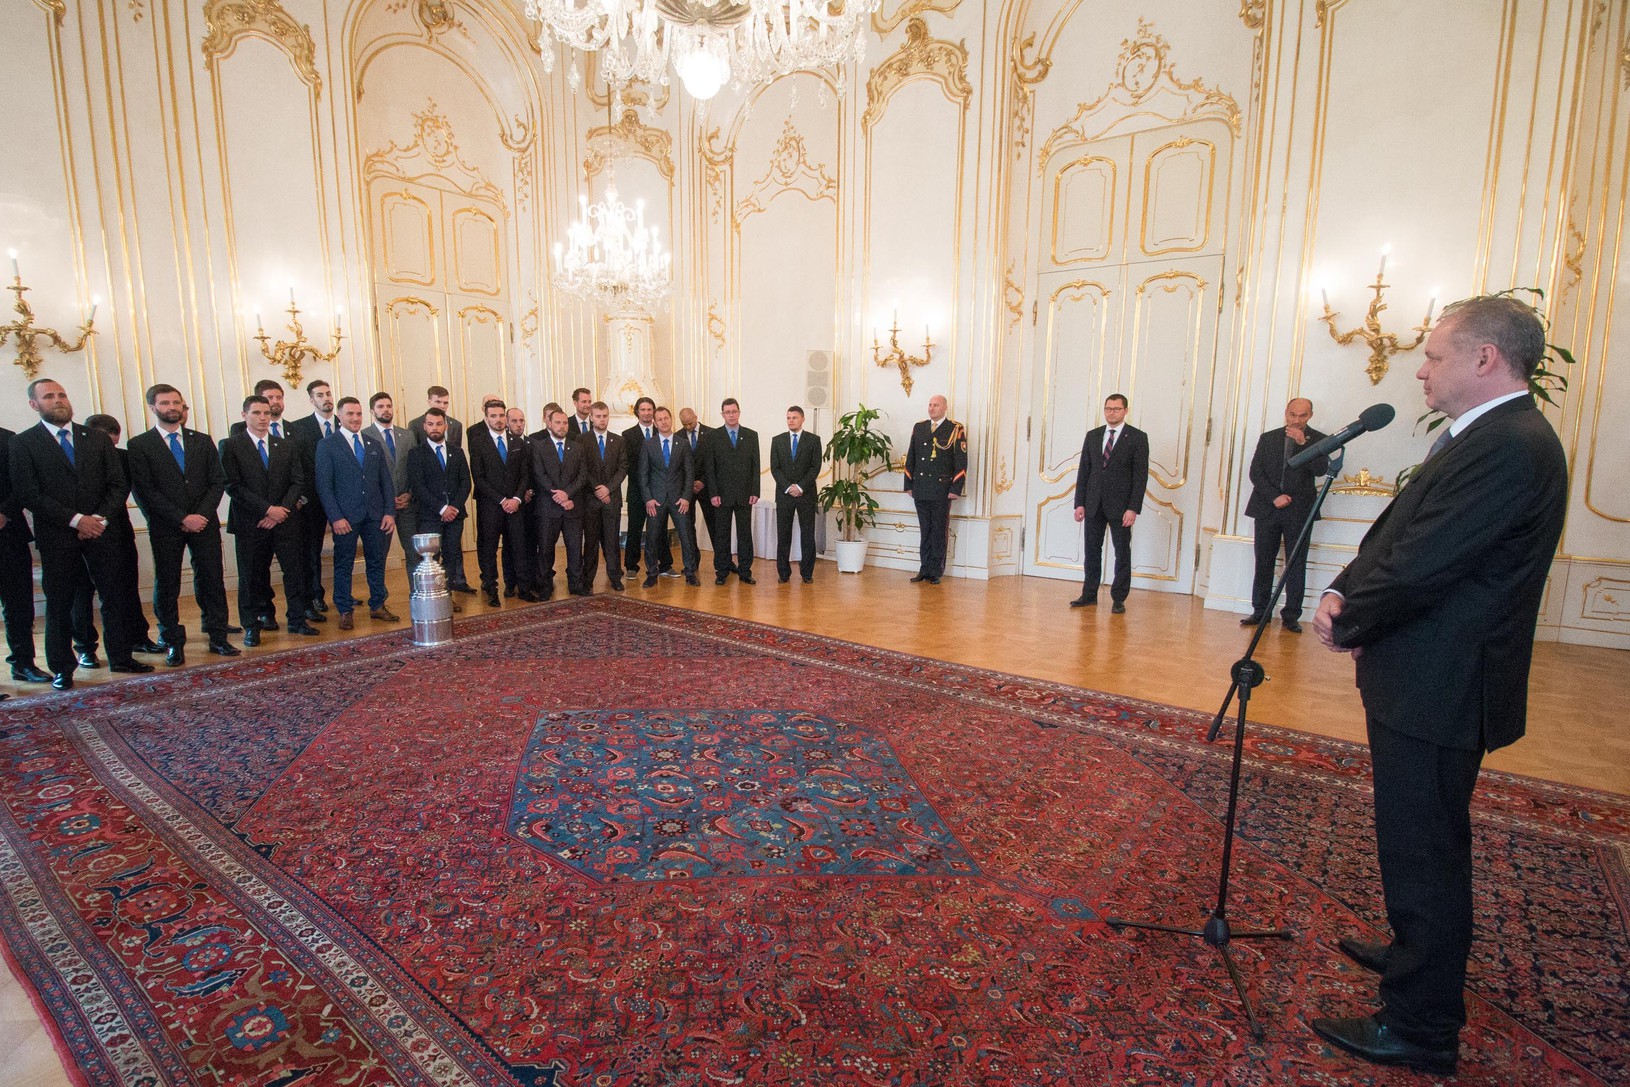 Prezident Andrej Kiska prijal